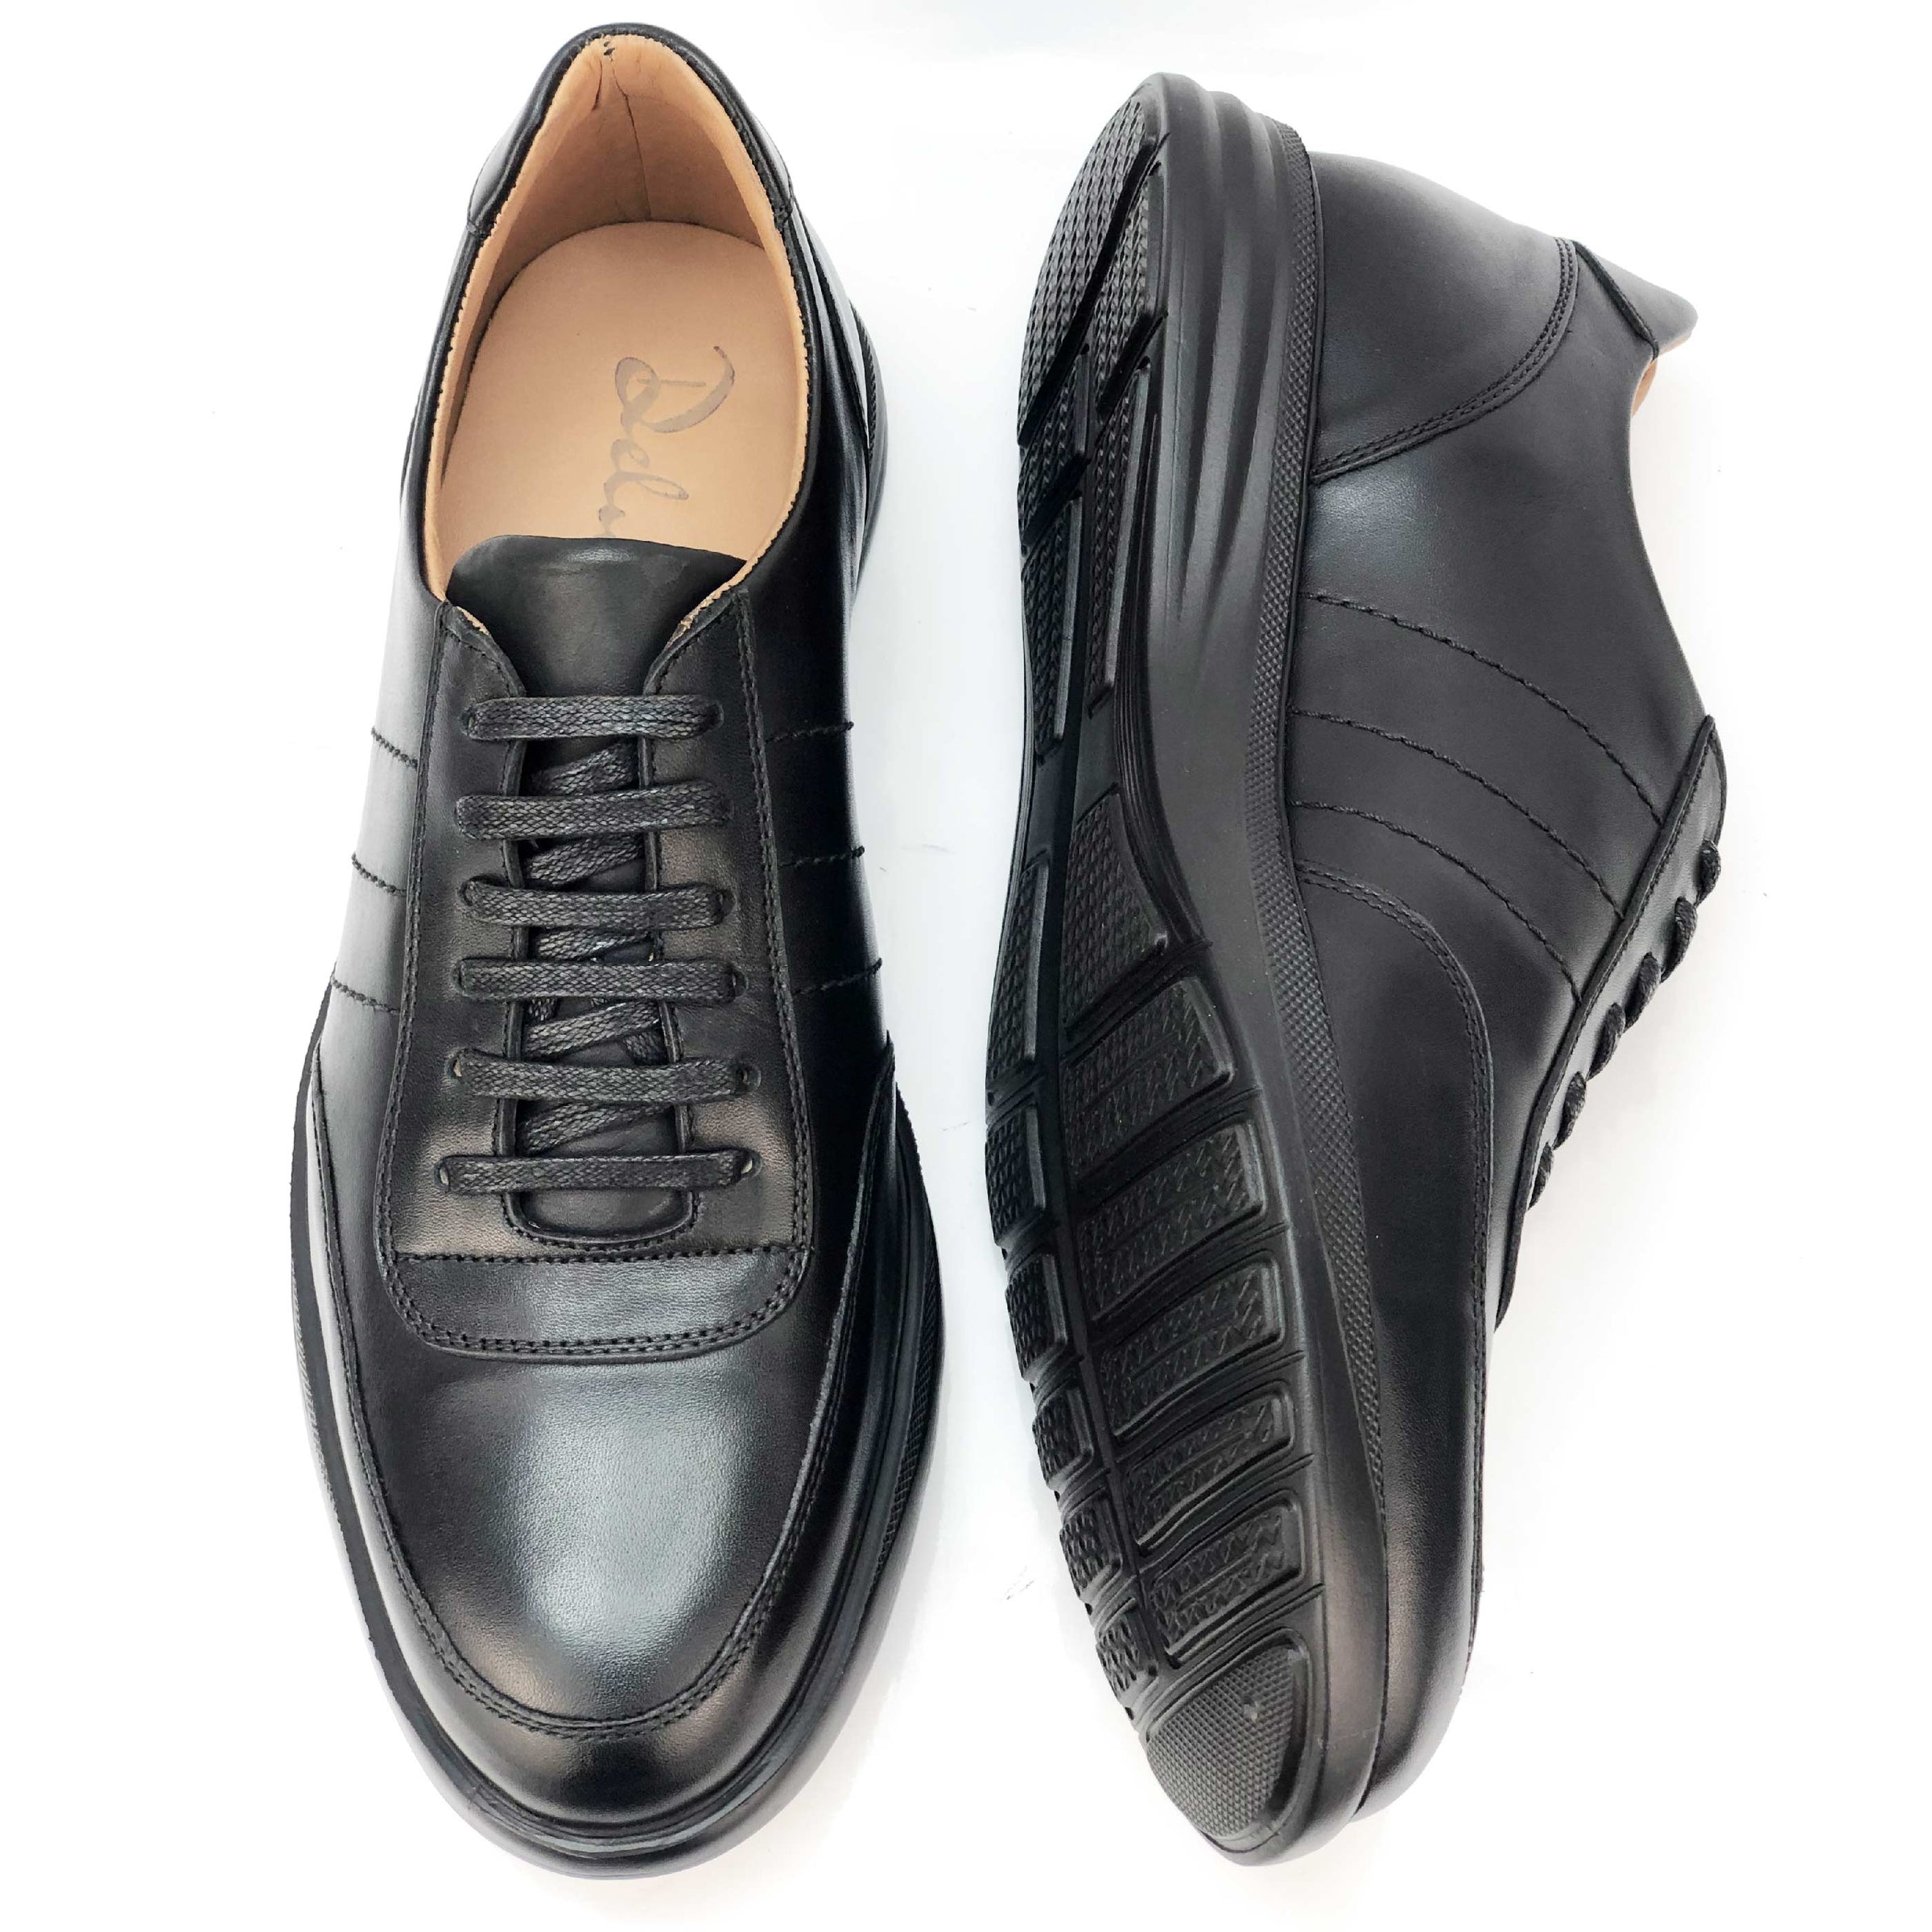 BSK2493-015 - Chaussure cuir NOIR - deluxe-maroc